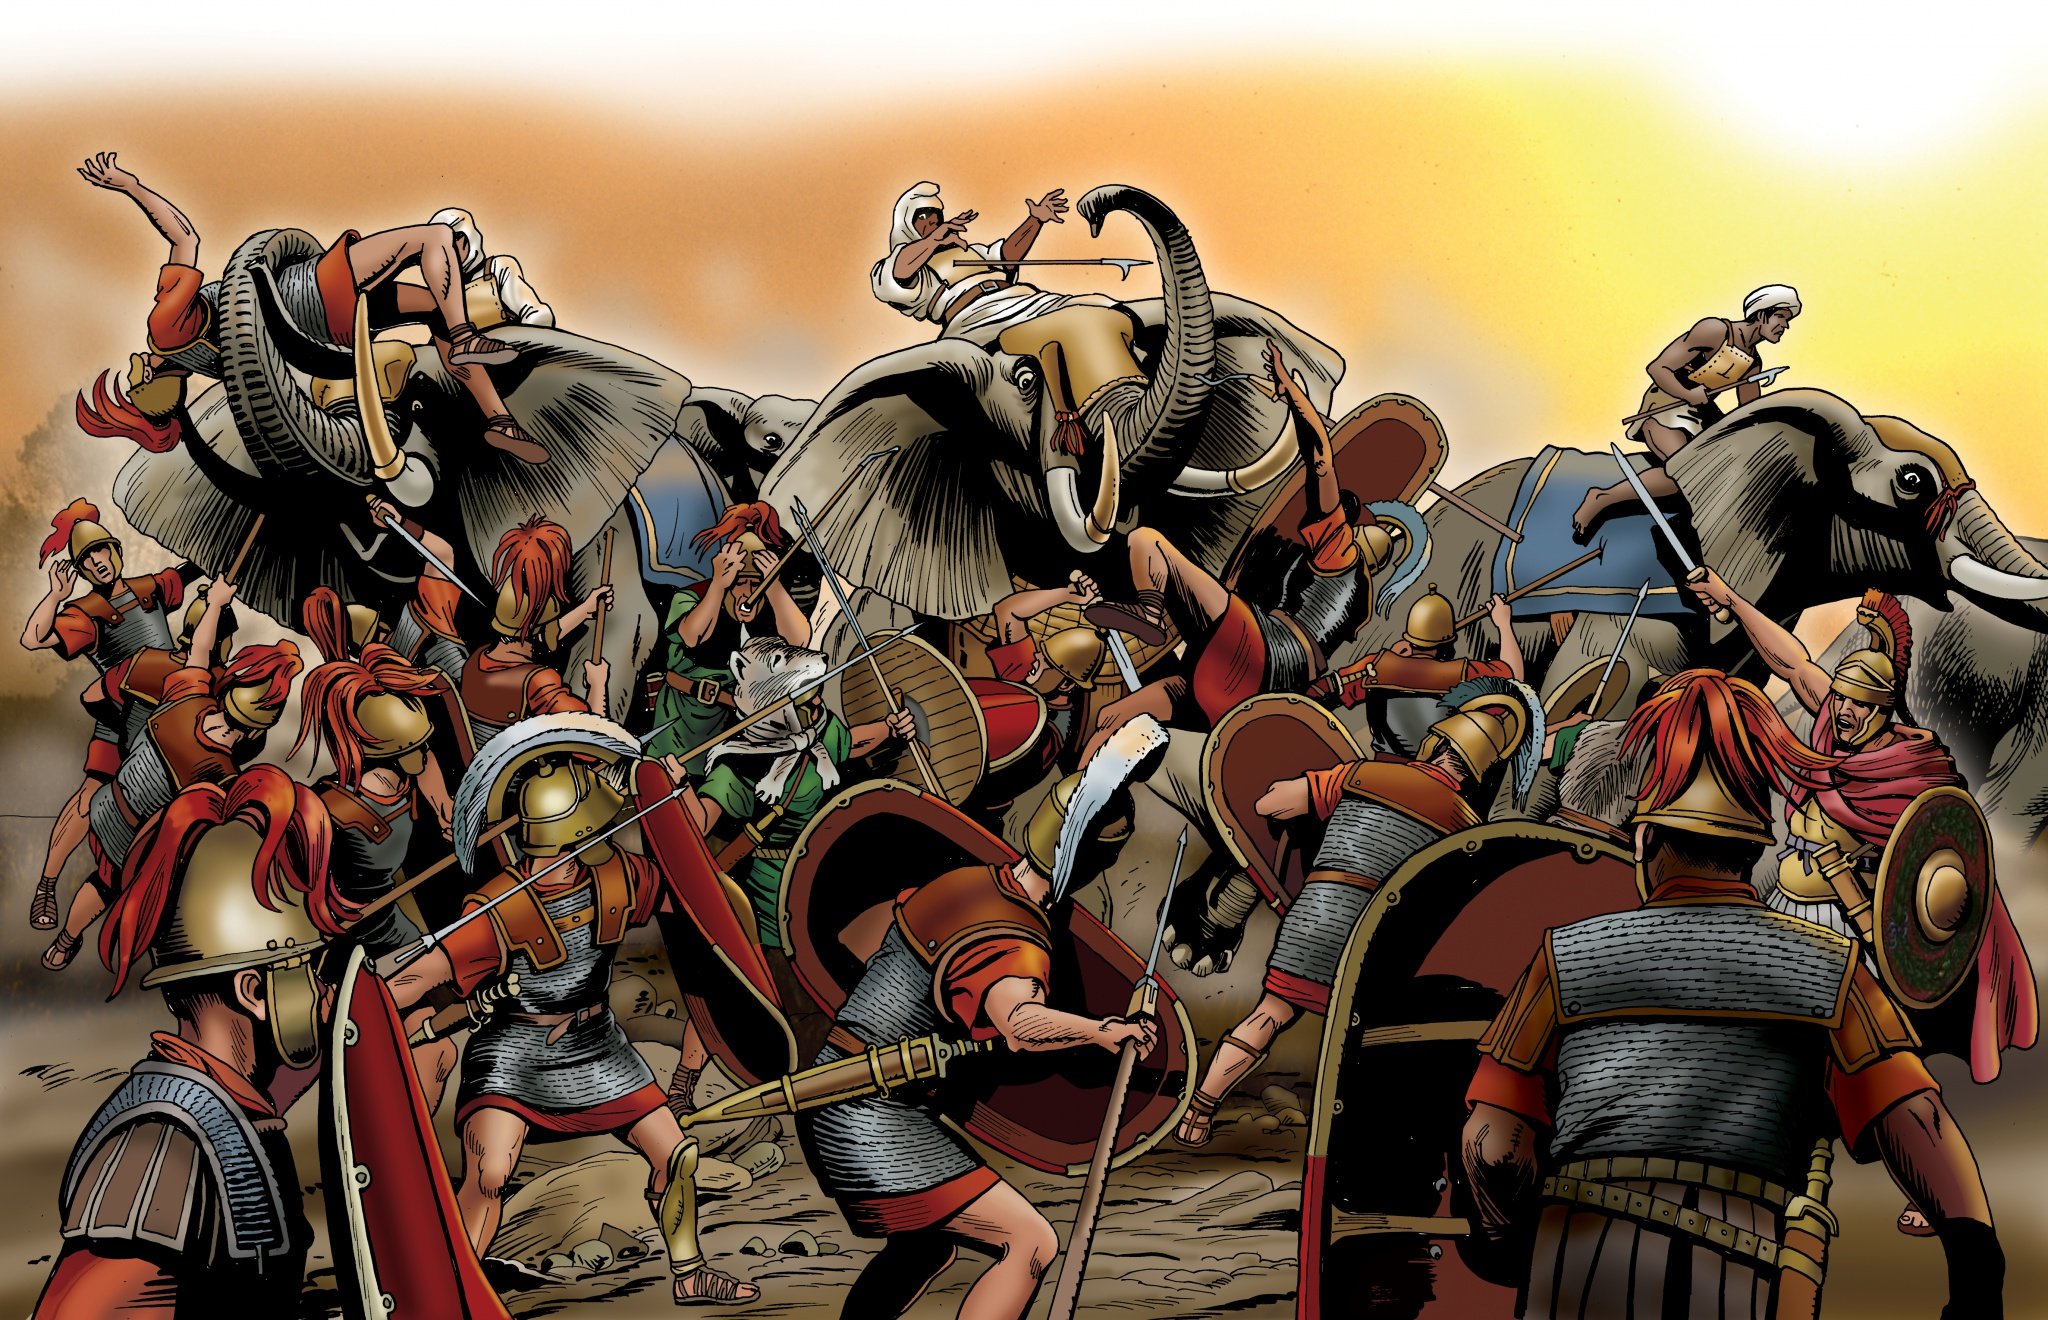 Битва ганнибала при заме. Битва при заме 202 г. до н.э.. Битва при заме Карфаген против Рима. Римские легионеры арт Карфаген. Карфаген против Рима арт.